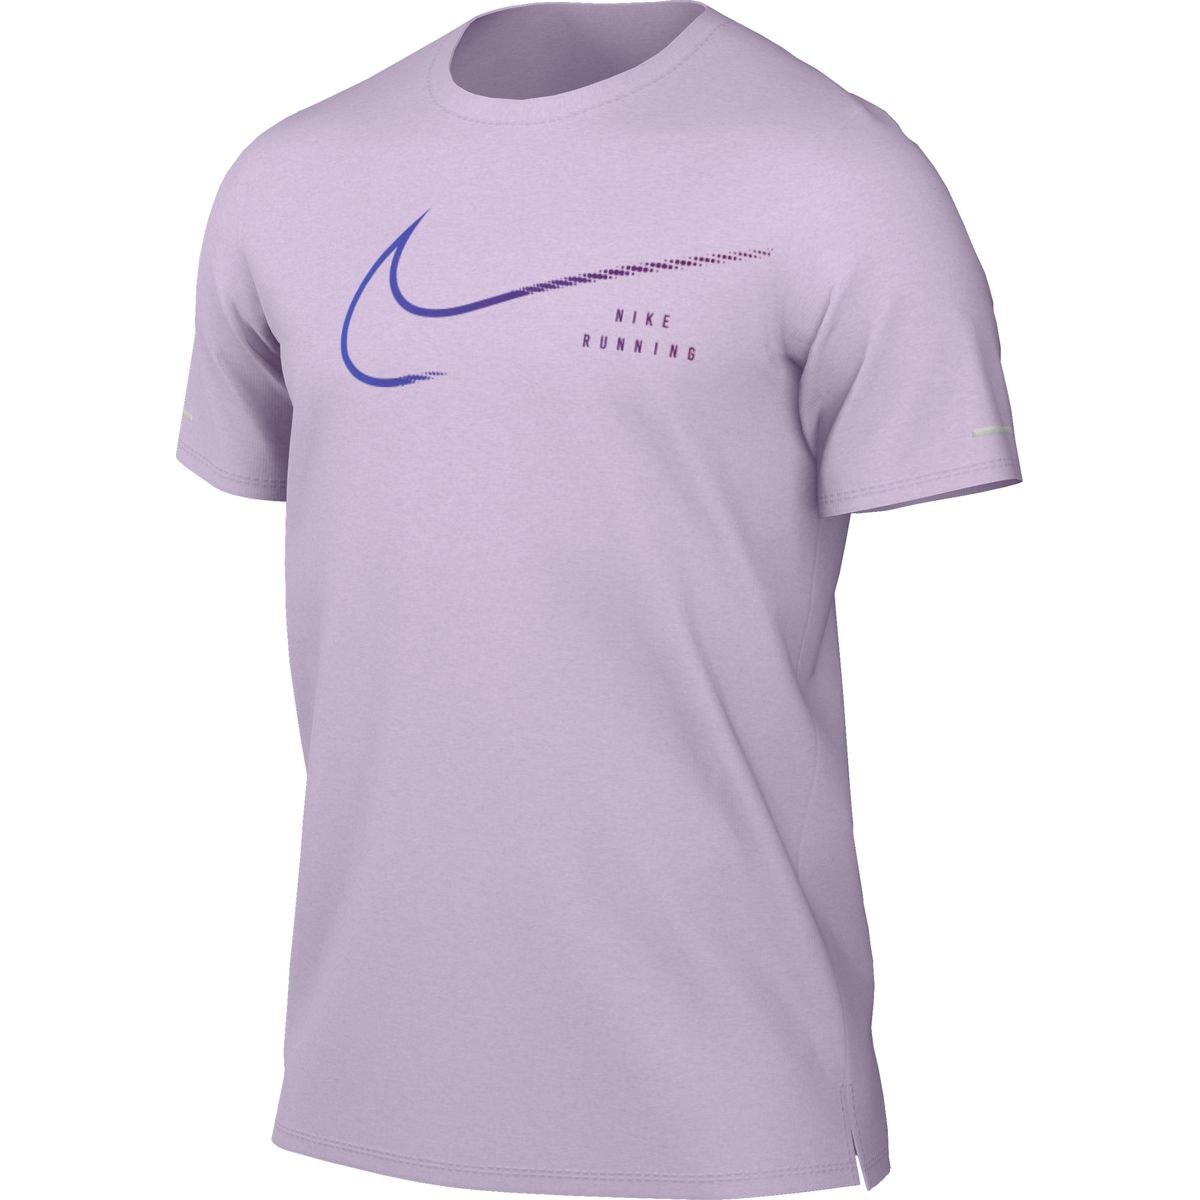 Nike Dri-FIT UV Run Division Miler Graphic Top Herren T-Shirt